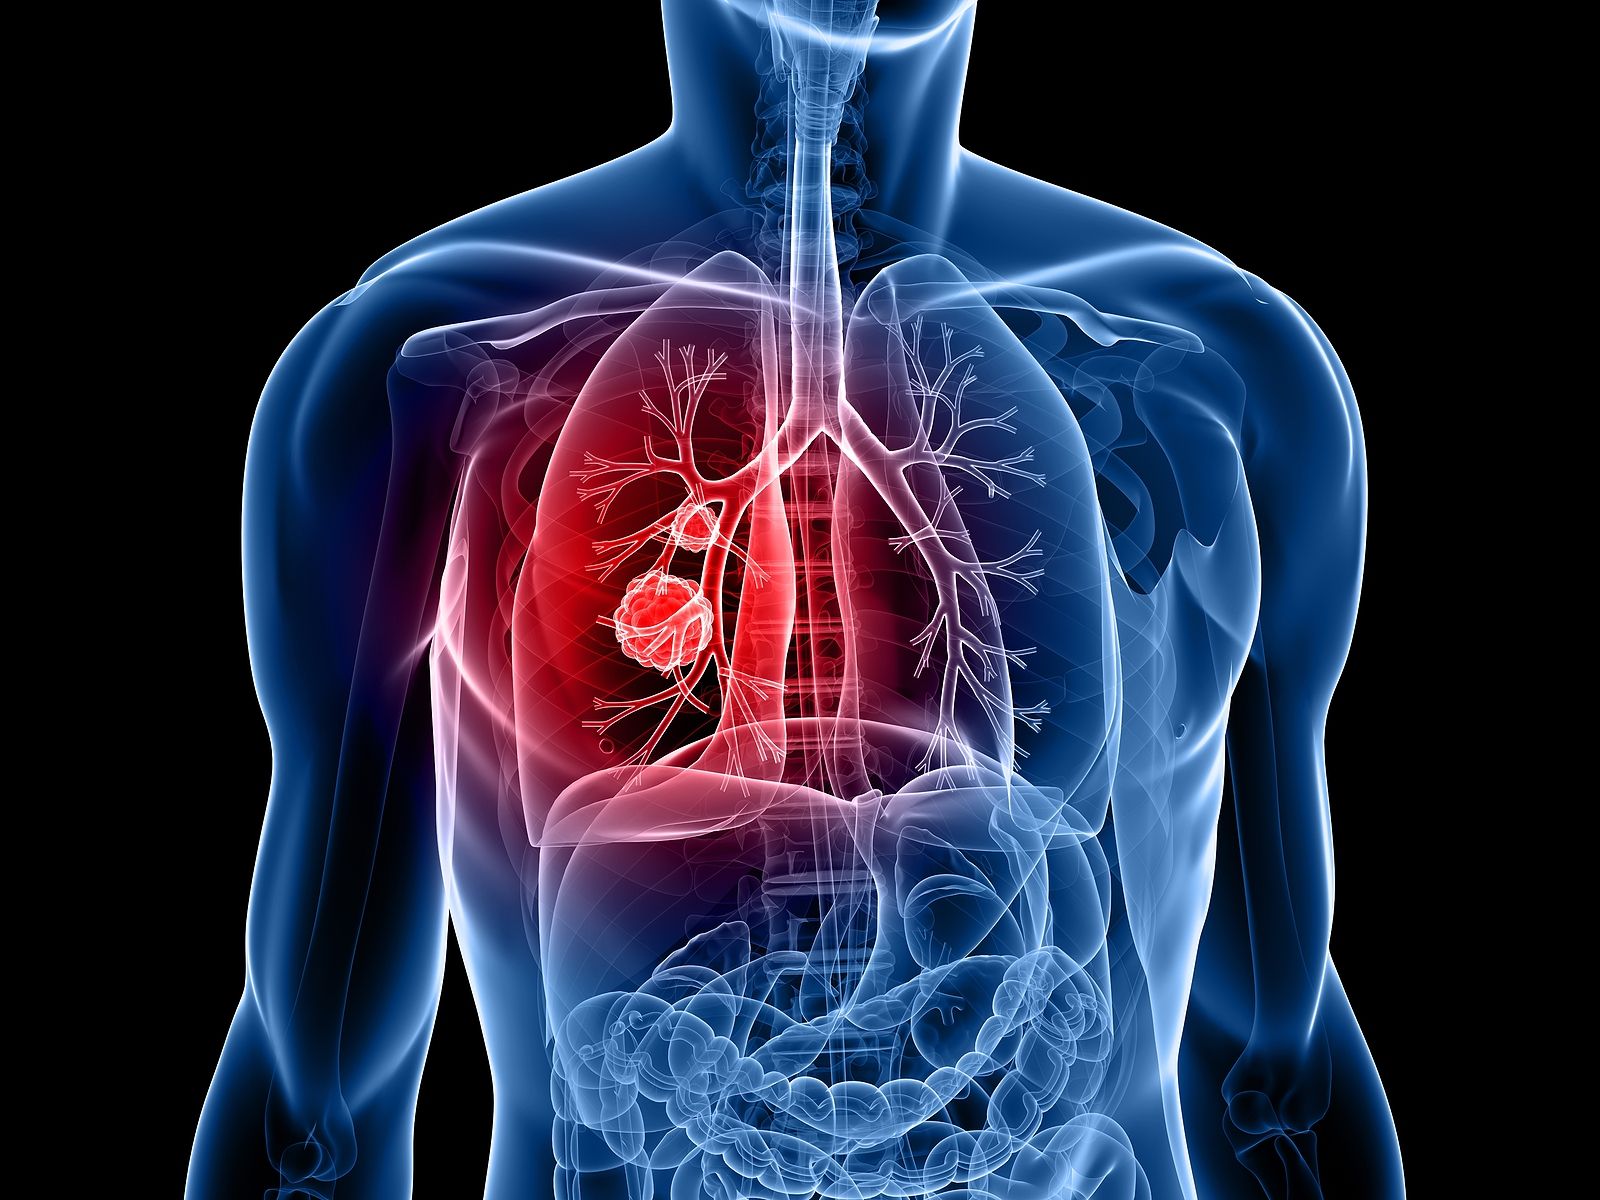 El perfil del paciente con cáncer de pulmón es un hombre fumador de 60 años